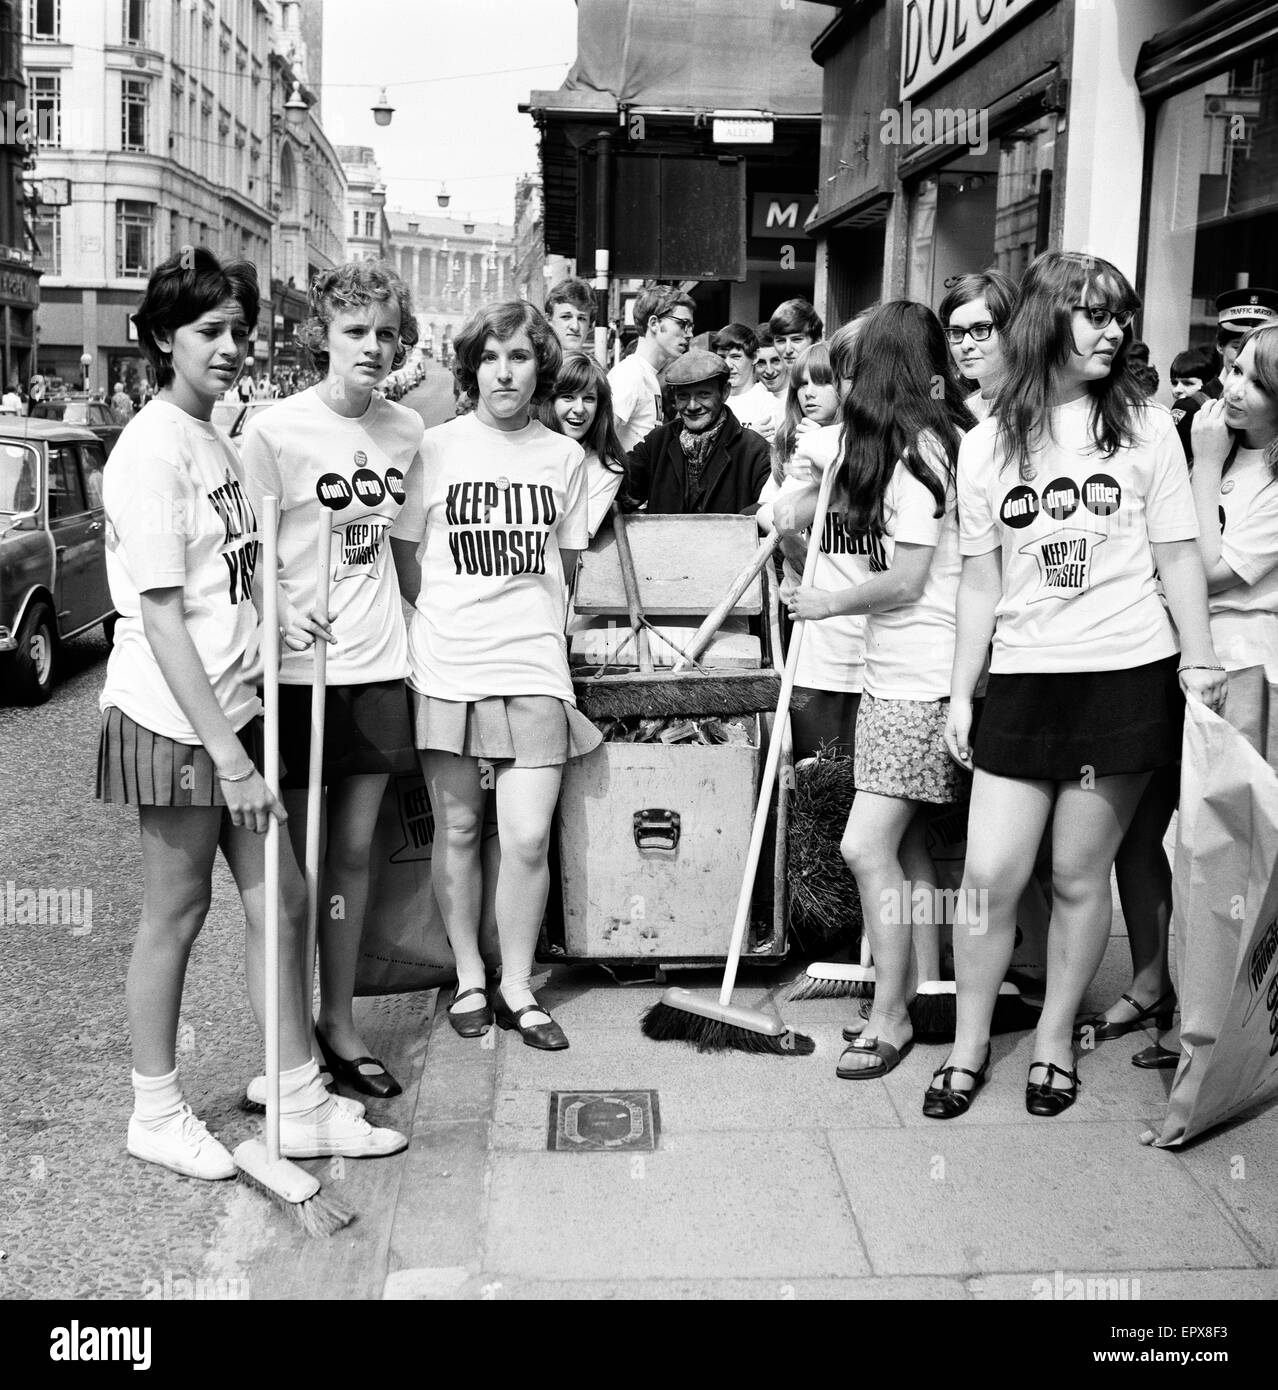 Jugendliche sagen "Keep Britain Tidy", New Street, Birmingham, Samstag, 6. Juli 1968. Stockfoto